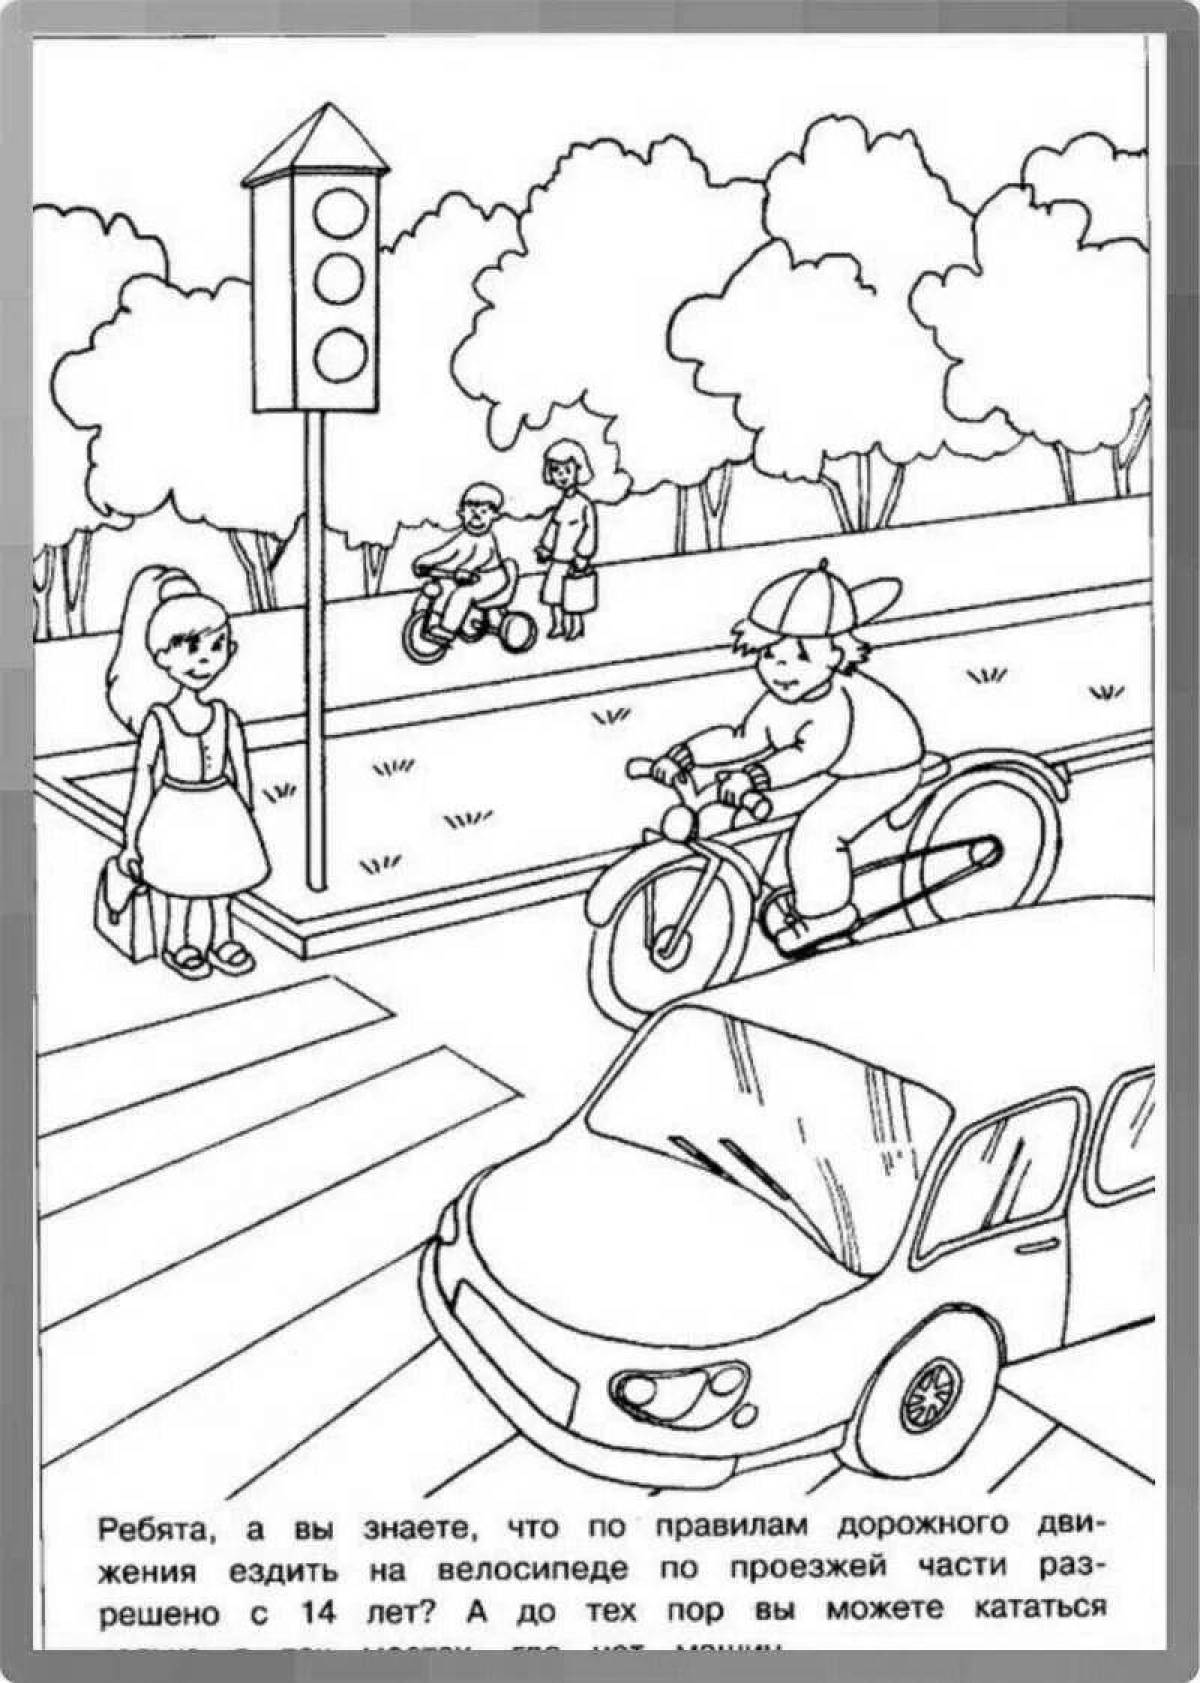 Pedestrian coloring book